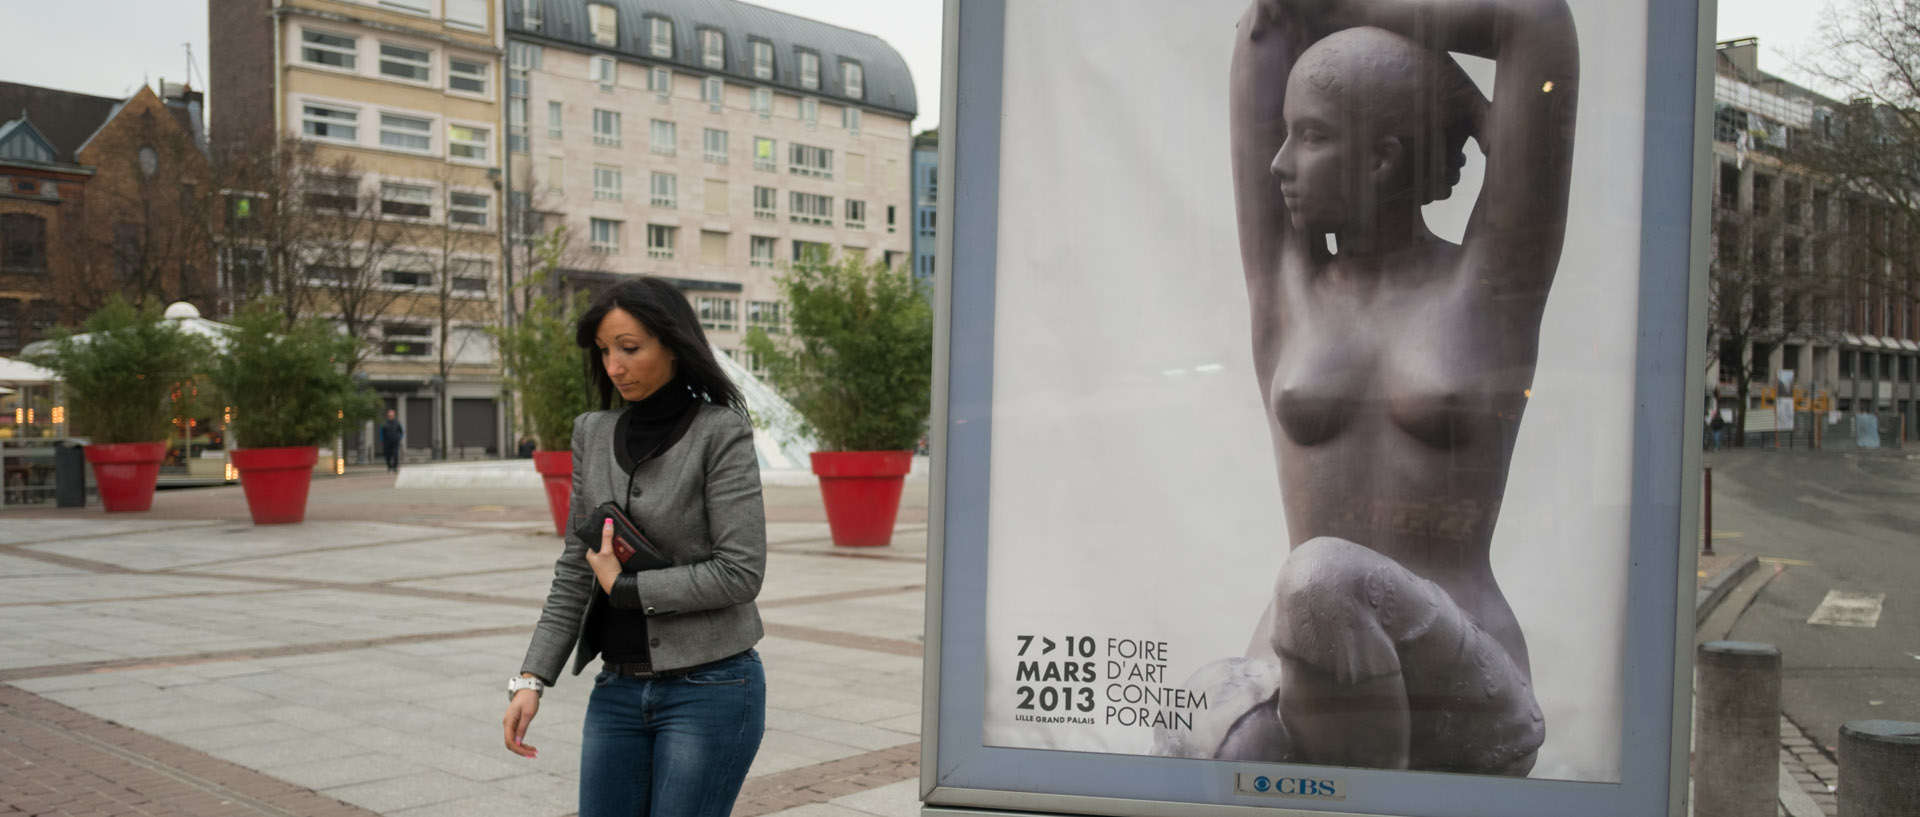 Femme passant à côté d'un panneau publicitaire, place Rihour, à Lille.